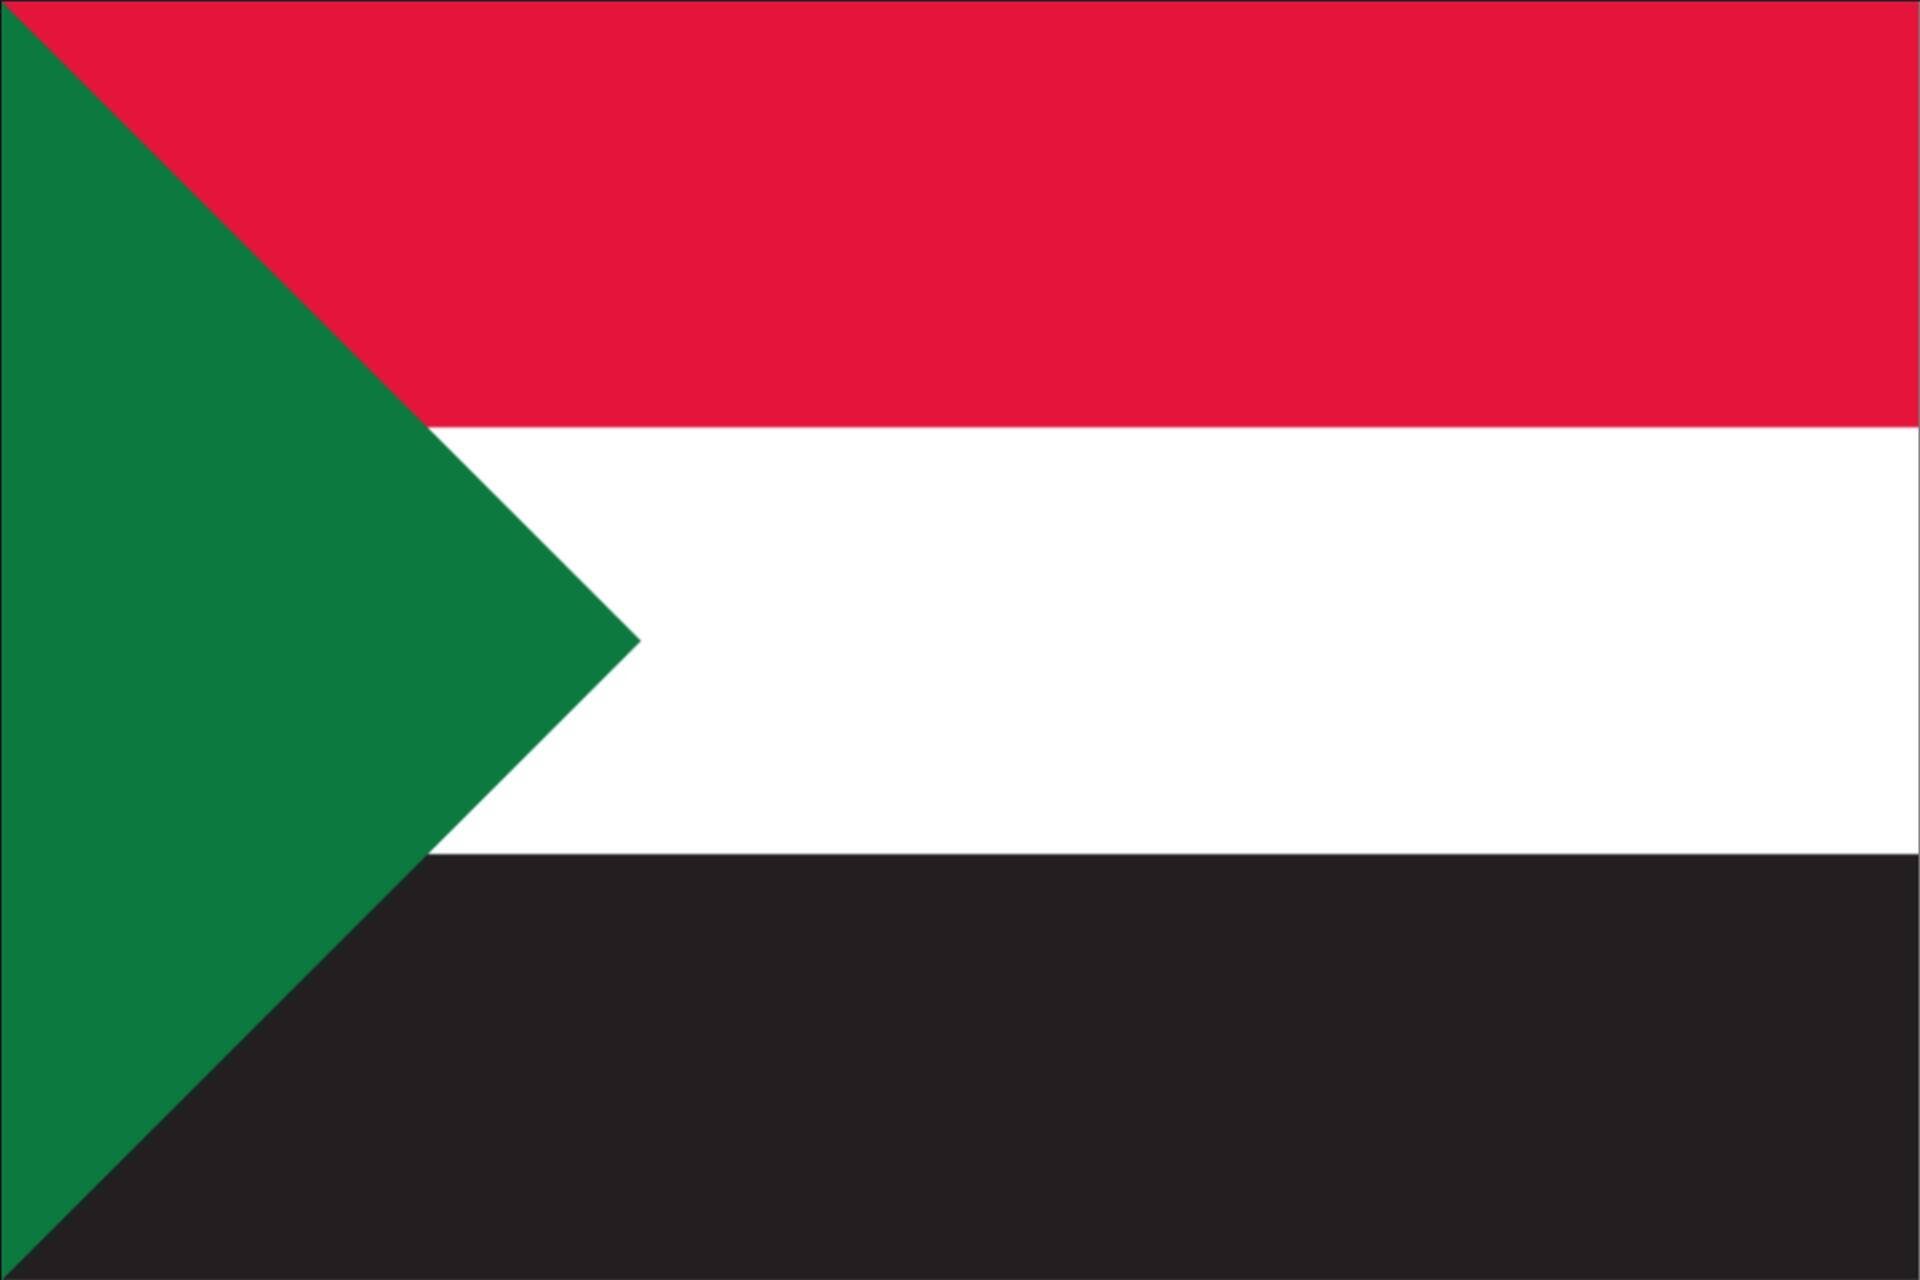 80 Sudan flaggenmeer g/m² Flagge